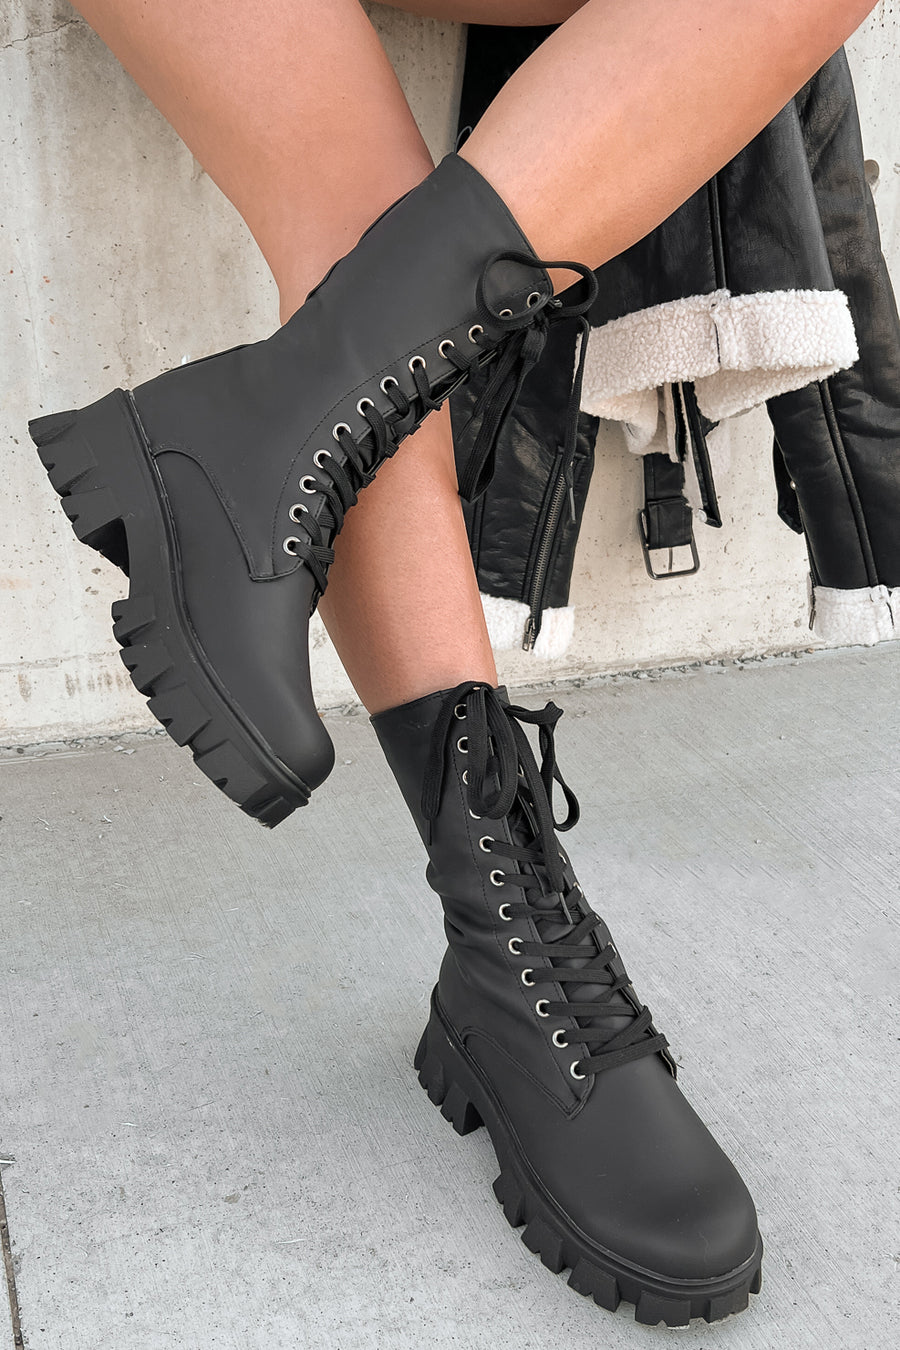 Doorbuster Get A Move On Lace-Up Combat Boots (Black) - NanaMacs